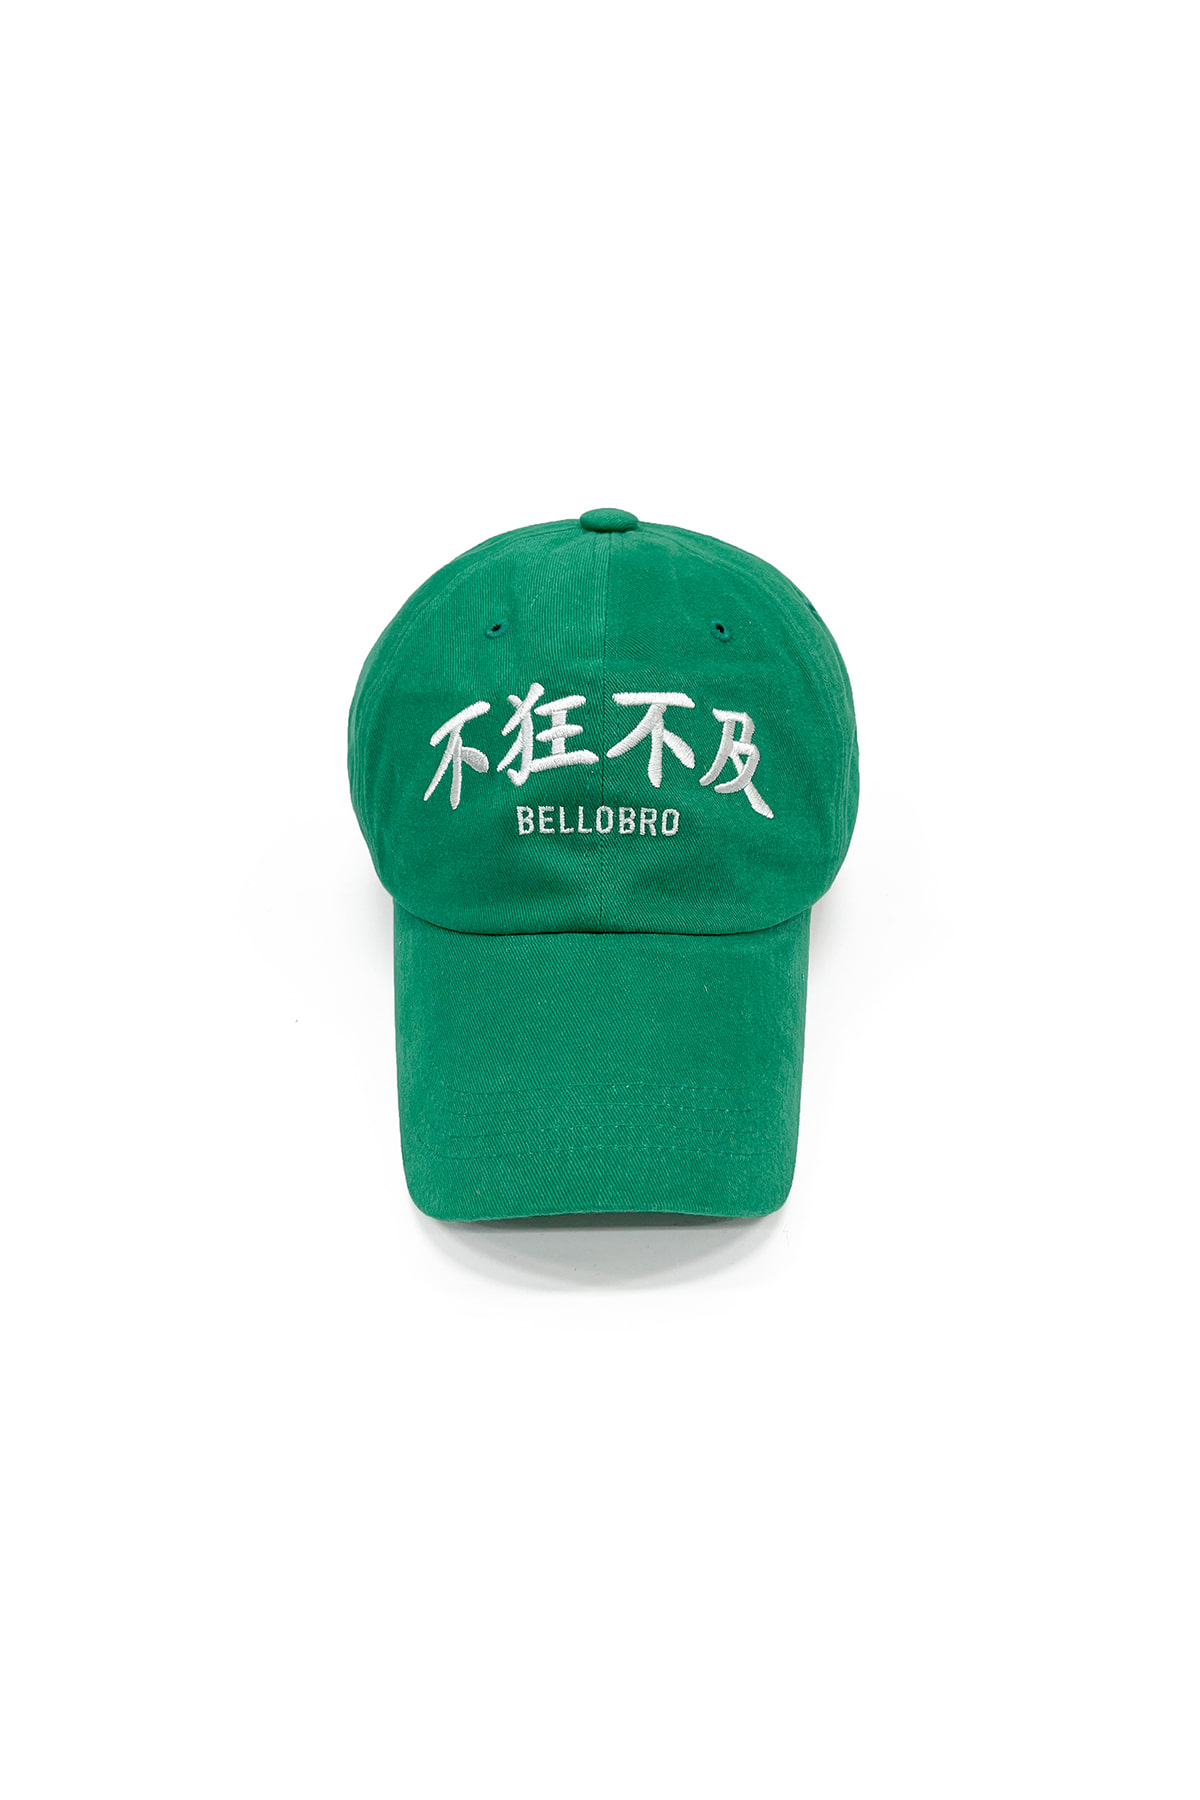 不狂不及 cap (green)